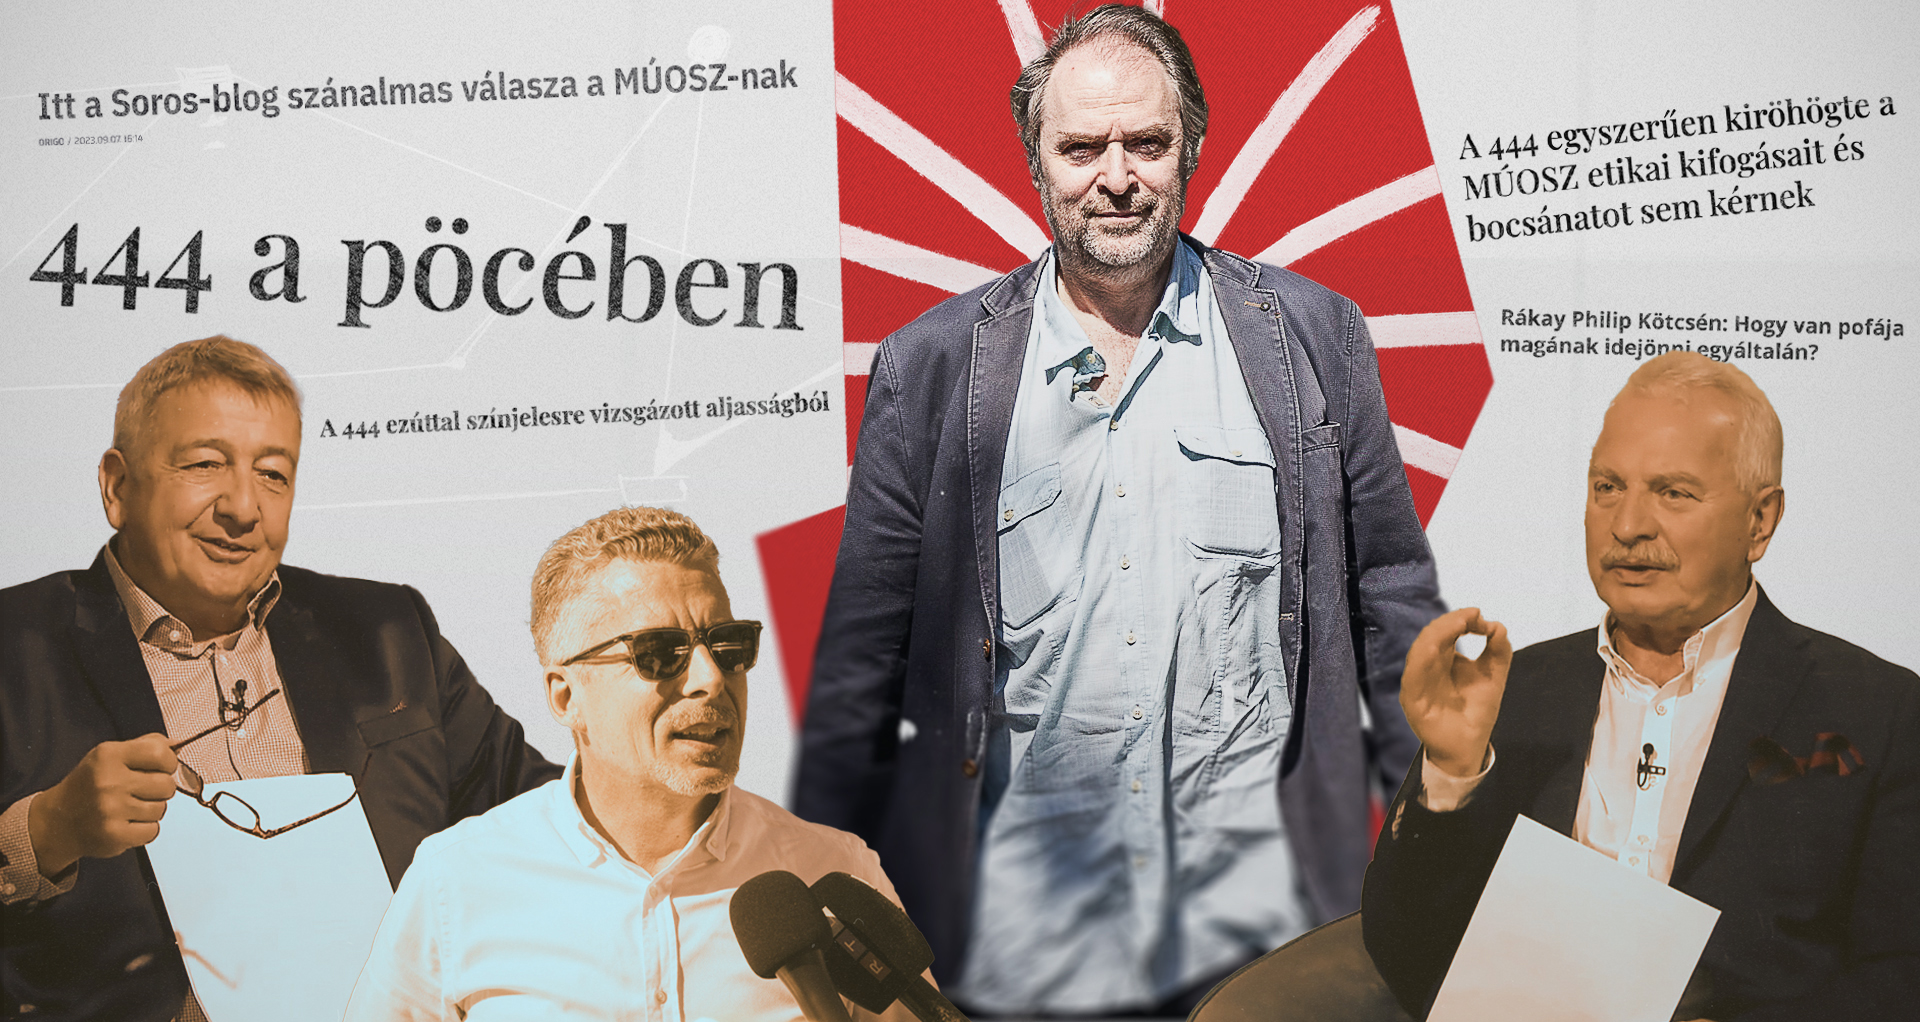 Illiberális könnyek: visszatért a PC-diktatúra, snowflake-ek szállták meg a fideszes médiát